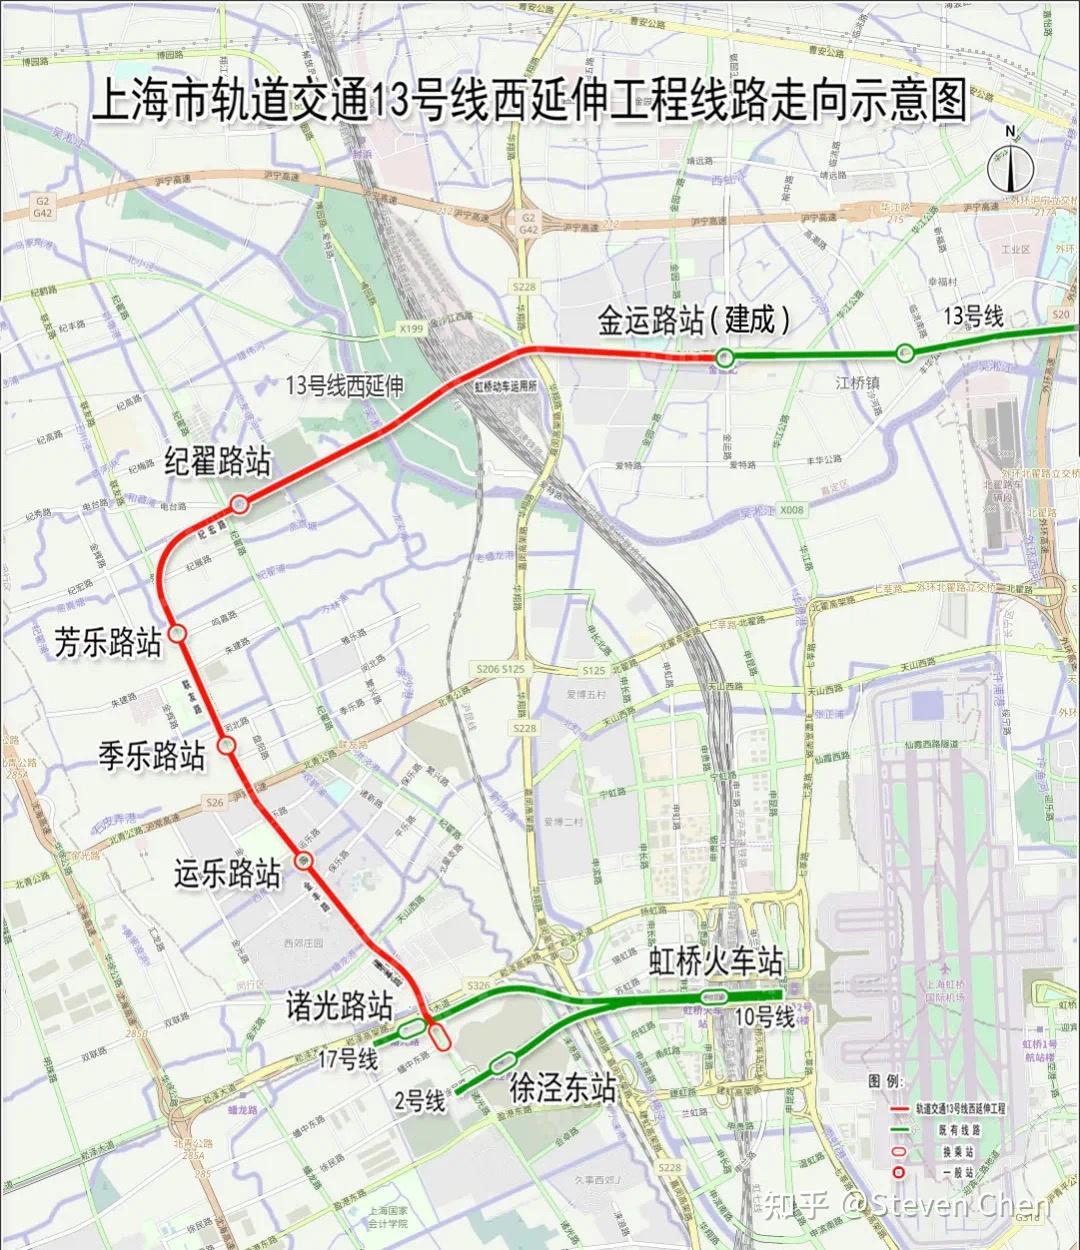 交通:华漕镇虽然目前镇域内并无任何地铁但是离开虹桥枢纽非常近